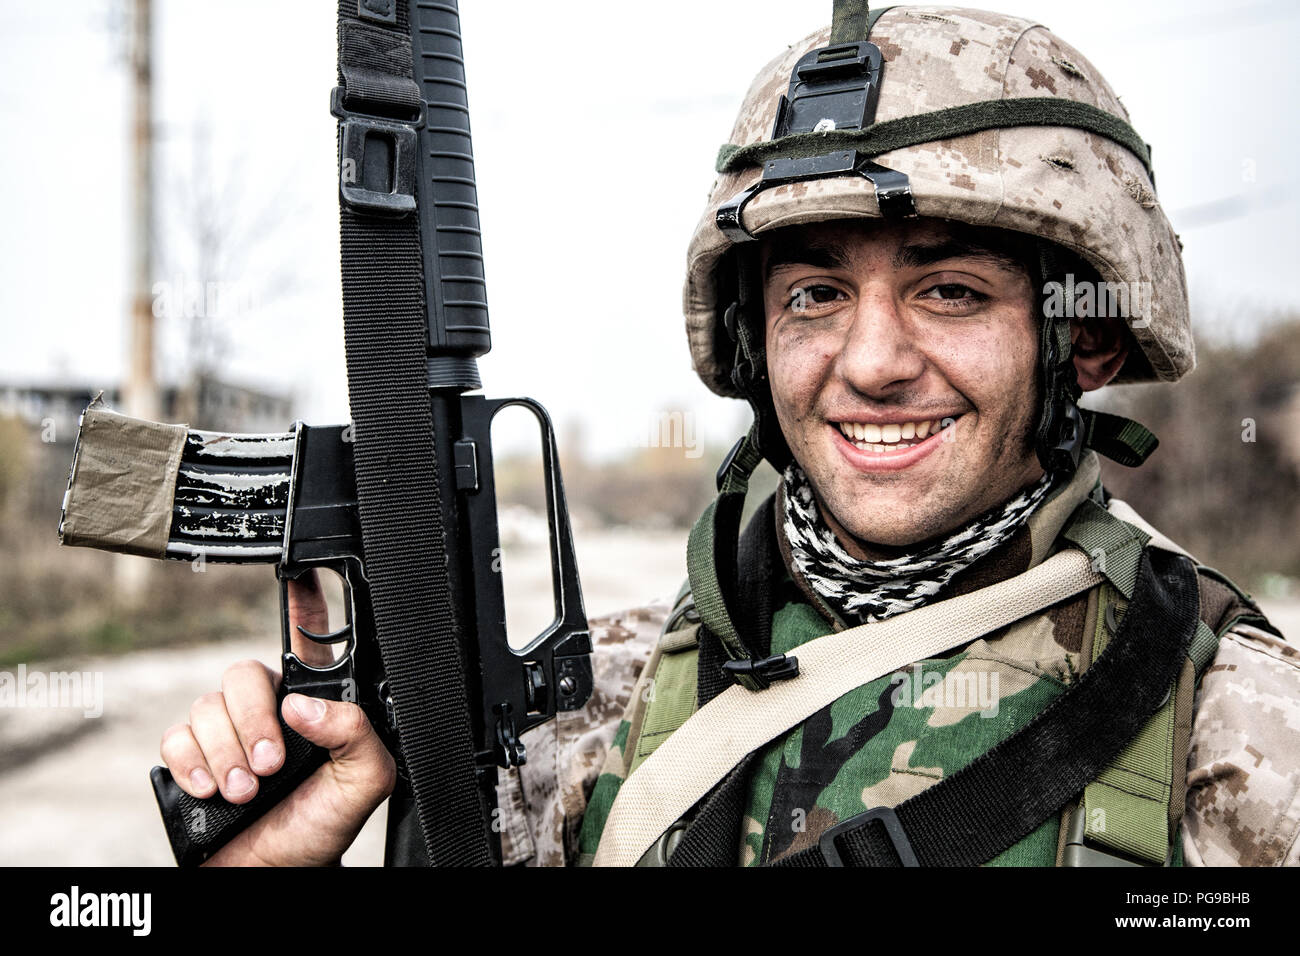 Sonriente soldado del ejército, la Infantería de Marina de los Estados  Unidos shooter de infantería en uniforme de combate de camuflaje,  protegidos con chalecos antibalas y cascos, posando con asalto ri Fotografía